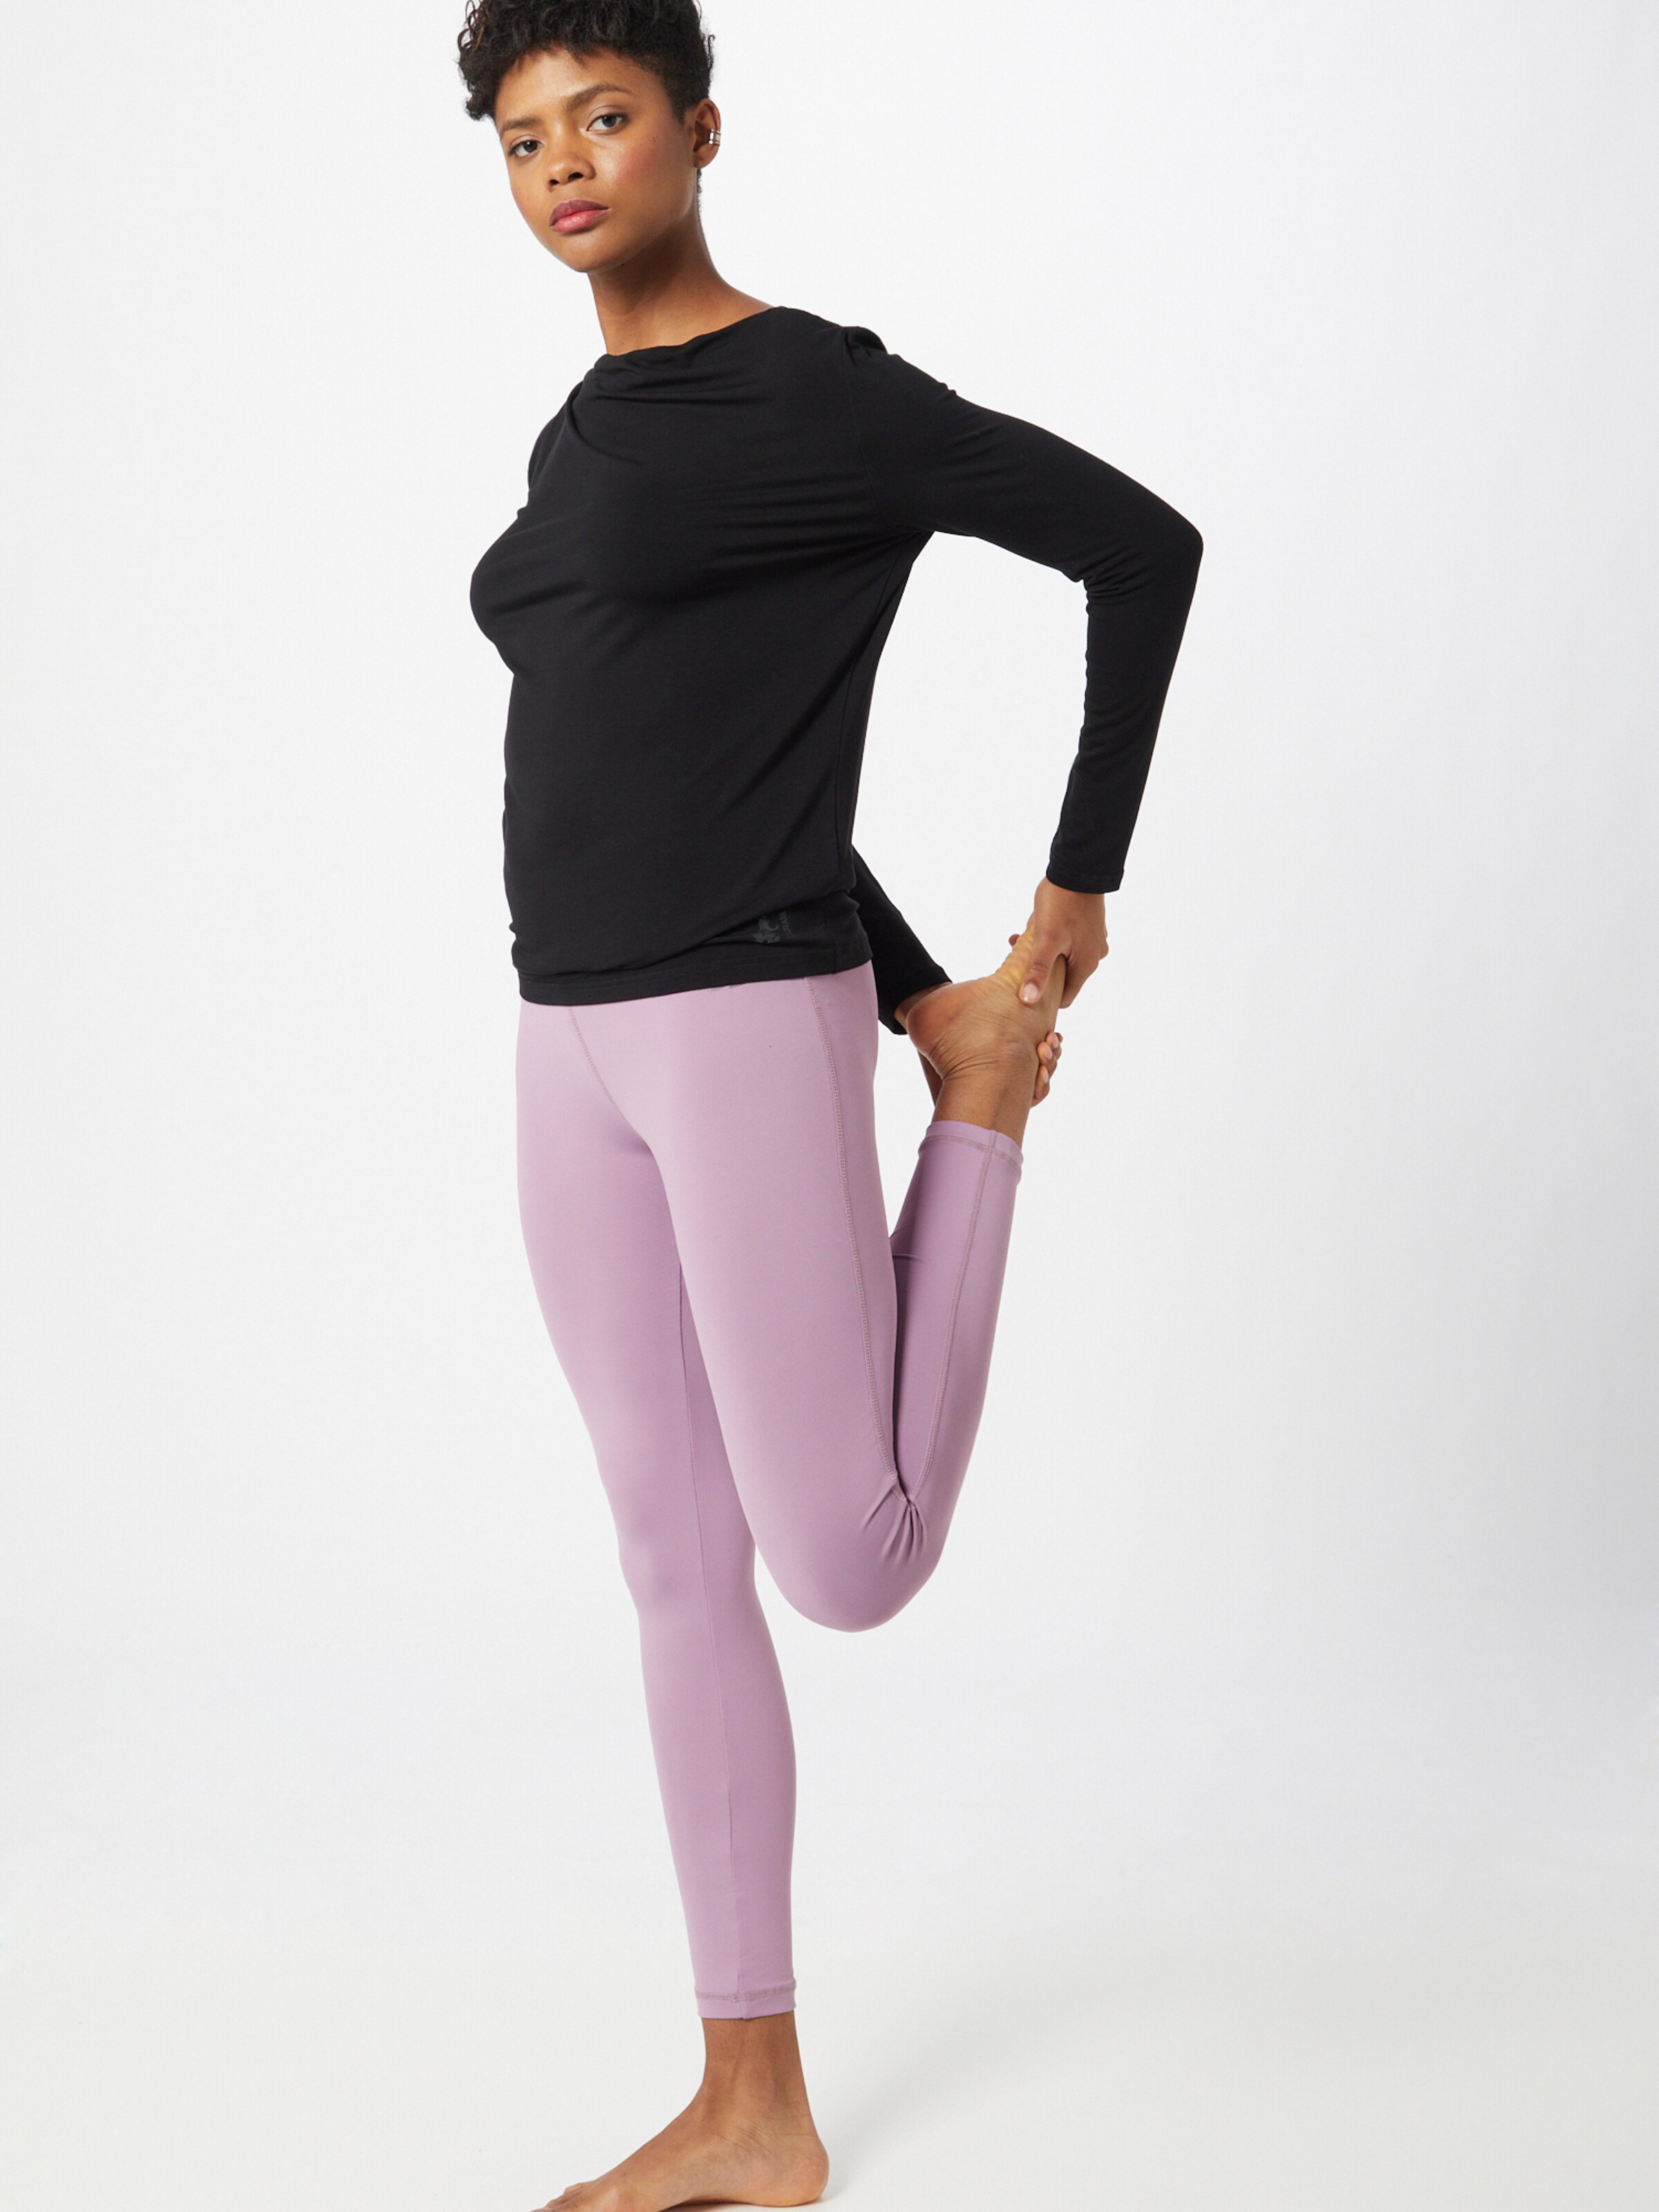 Frauen Sportbekleidung CURARE Yogawear Shirt in Schwarz - EM07679